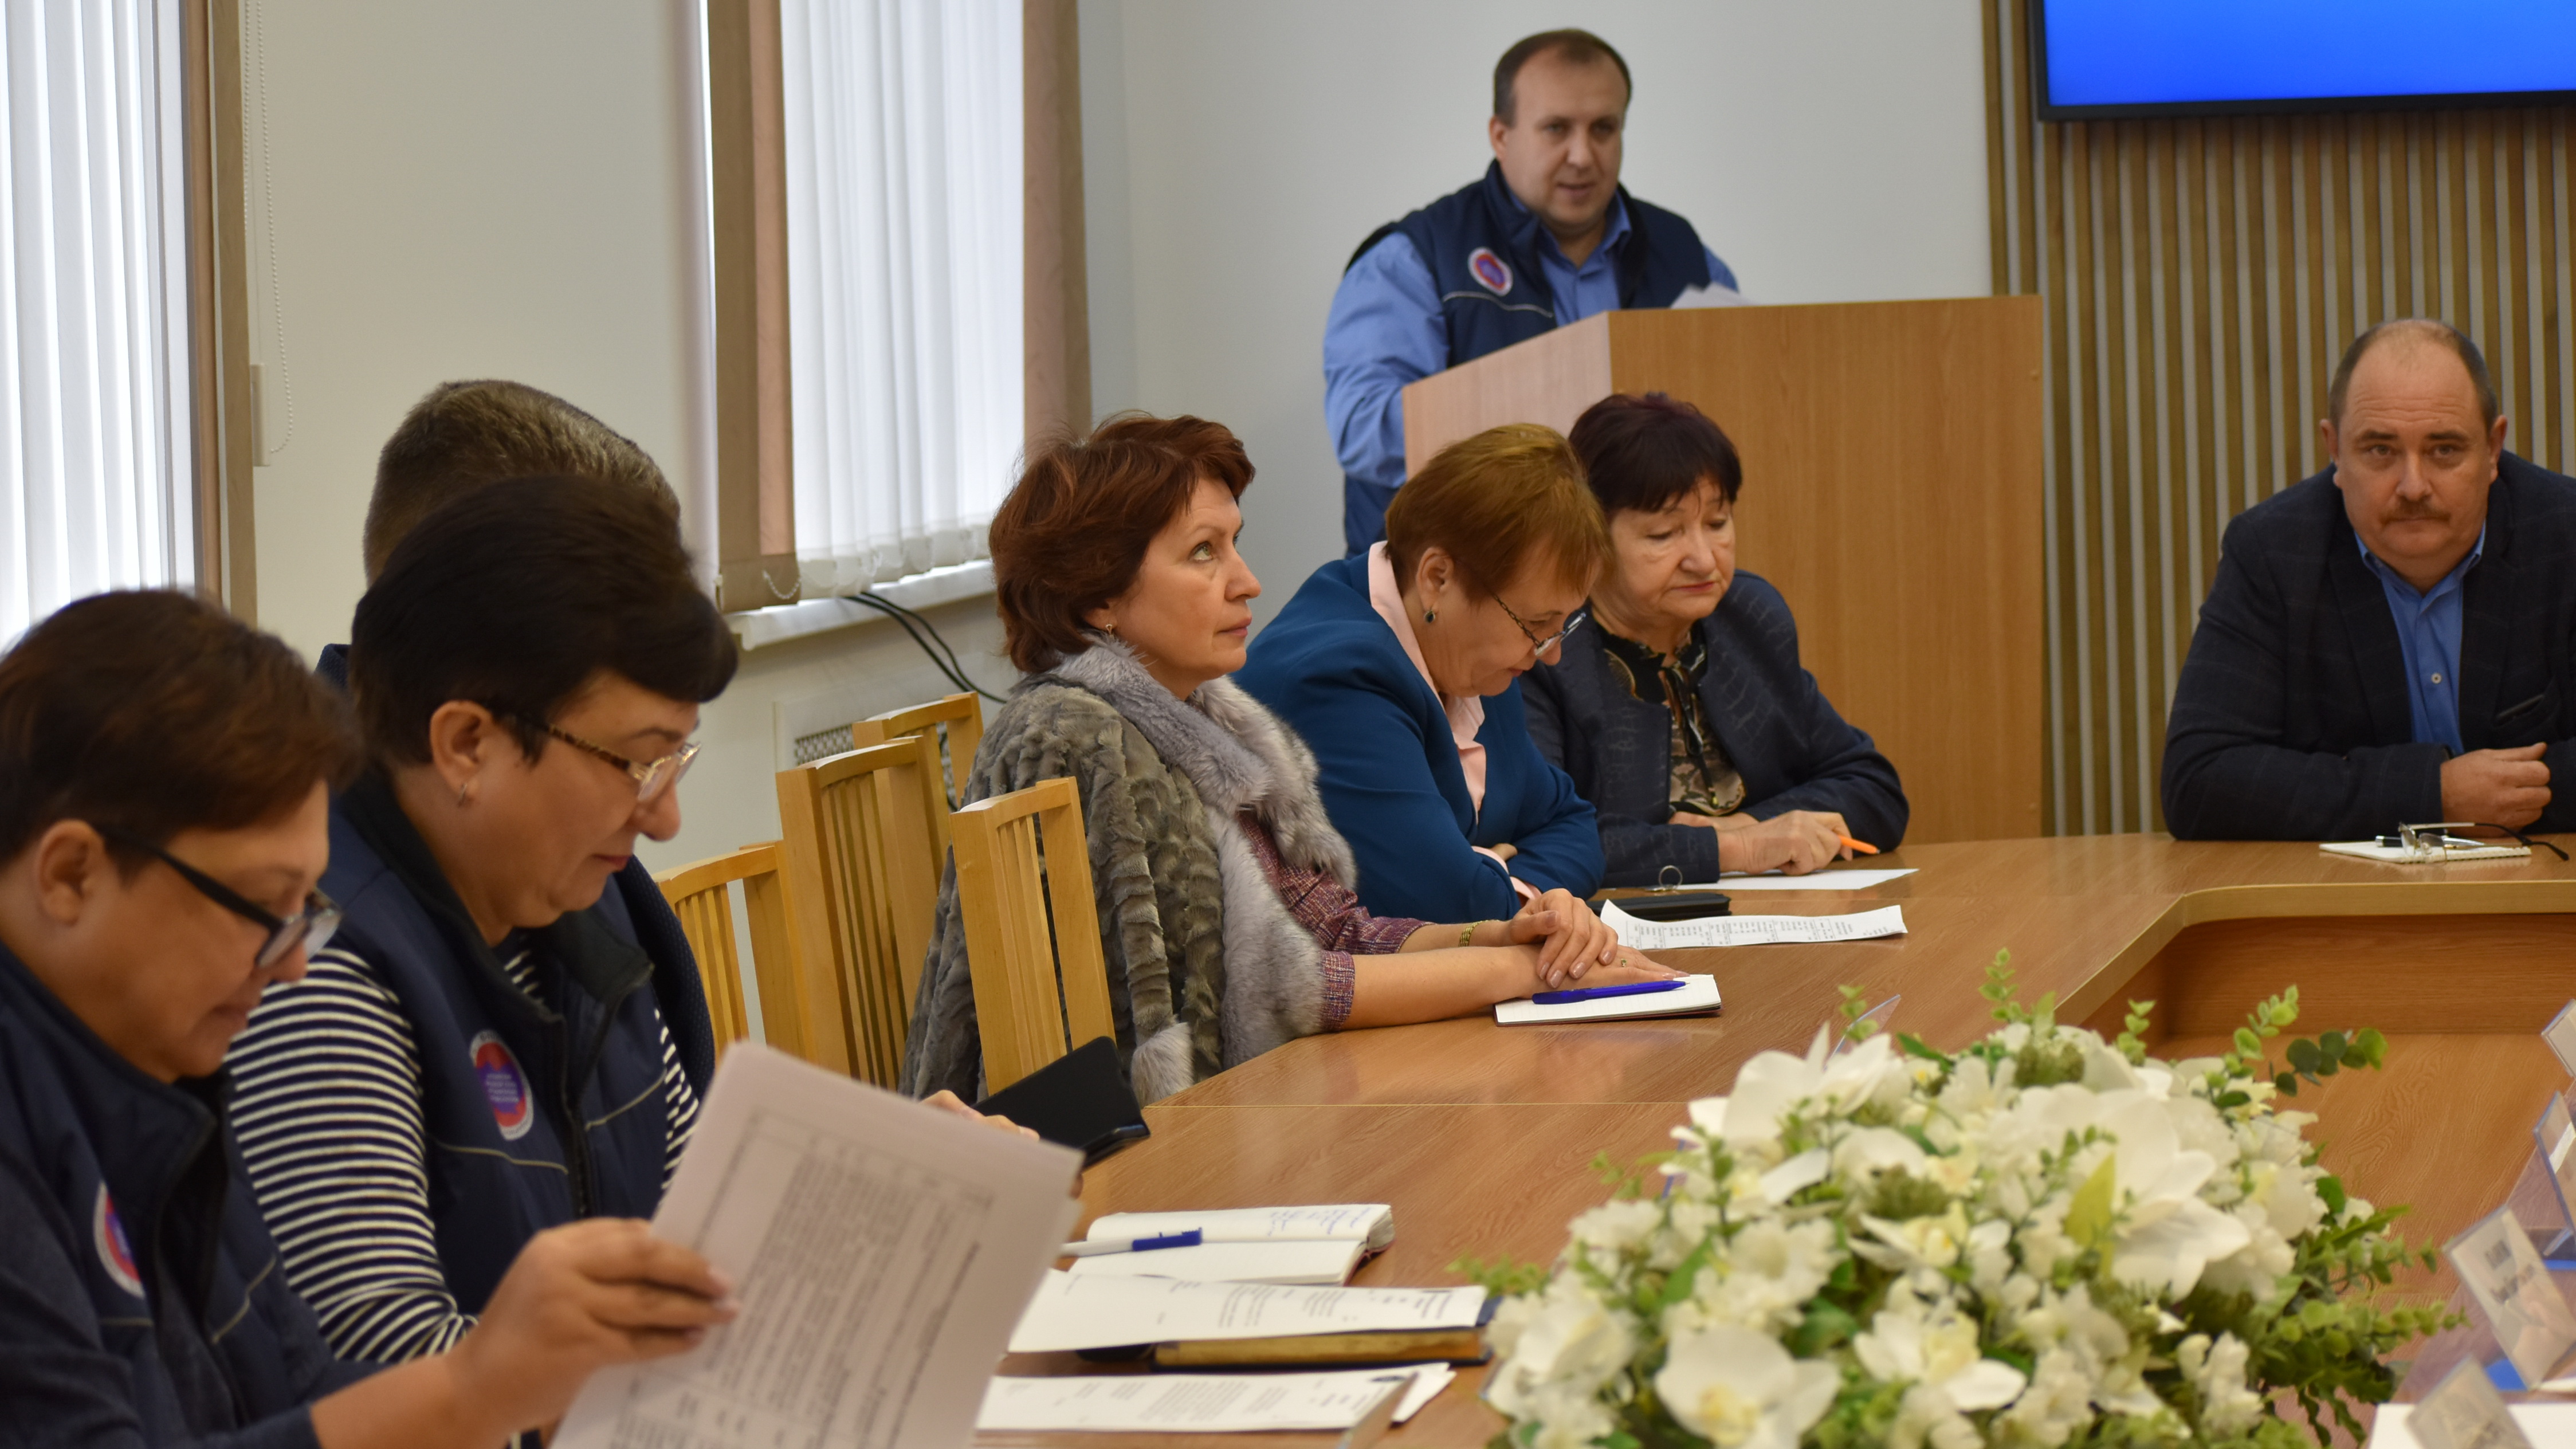 29 сентября в Алтайском краевом союзе организаций профсоюзов  прошло очередное, шестое заседание Президиума организации